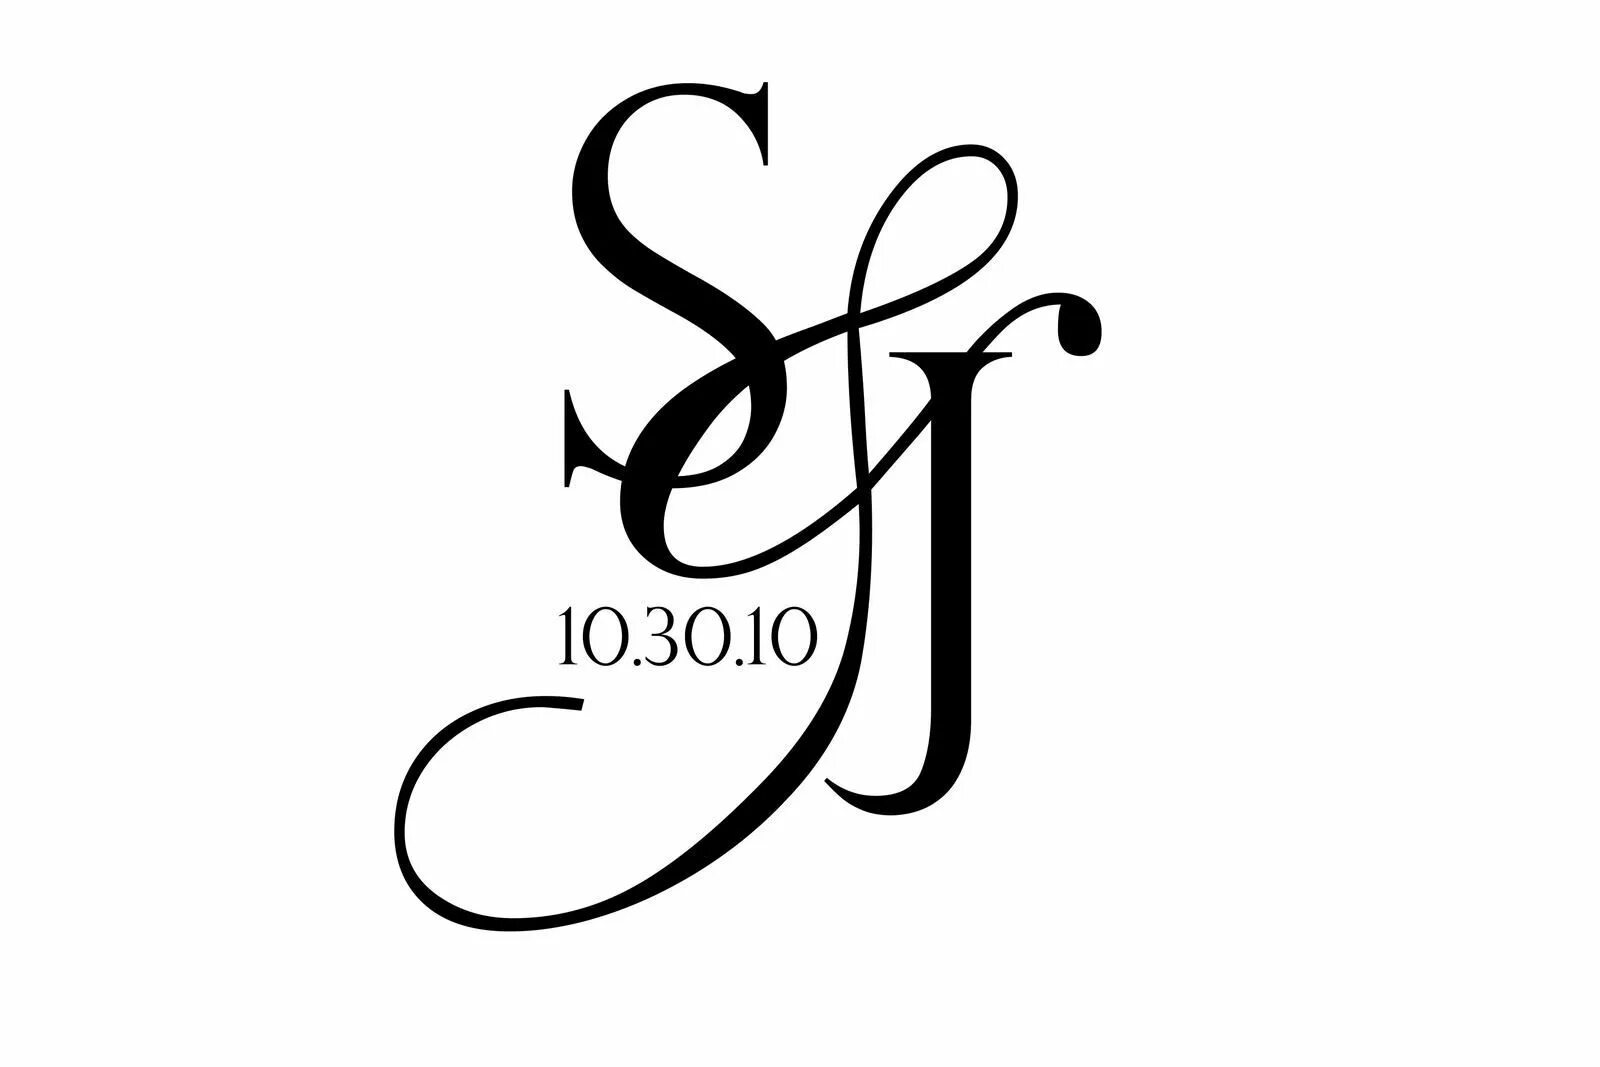 S j images. Логотип инициалы. Логотип Монограмма для дизайнера. Логотип с инициалами для бренд. Стильные инициалы.